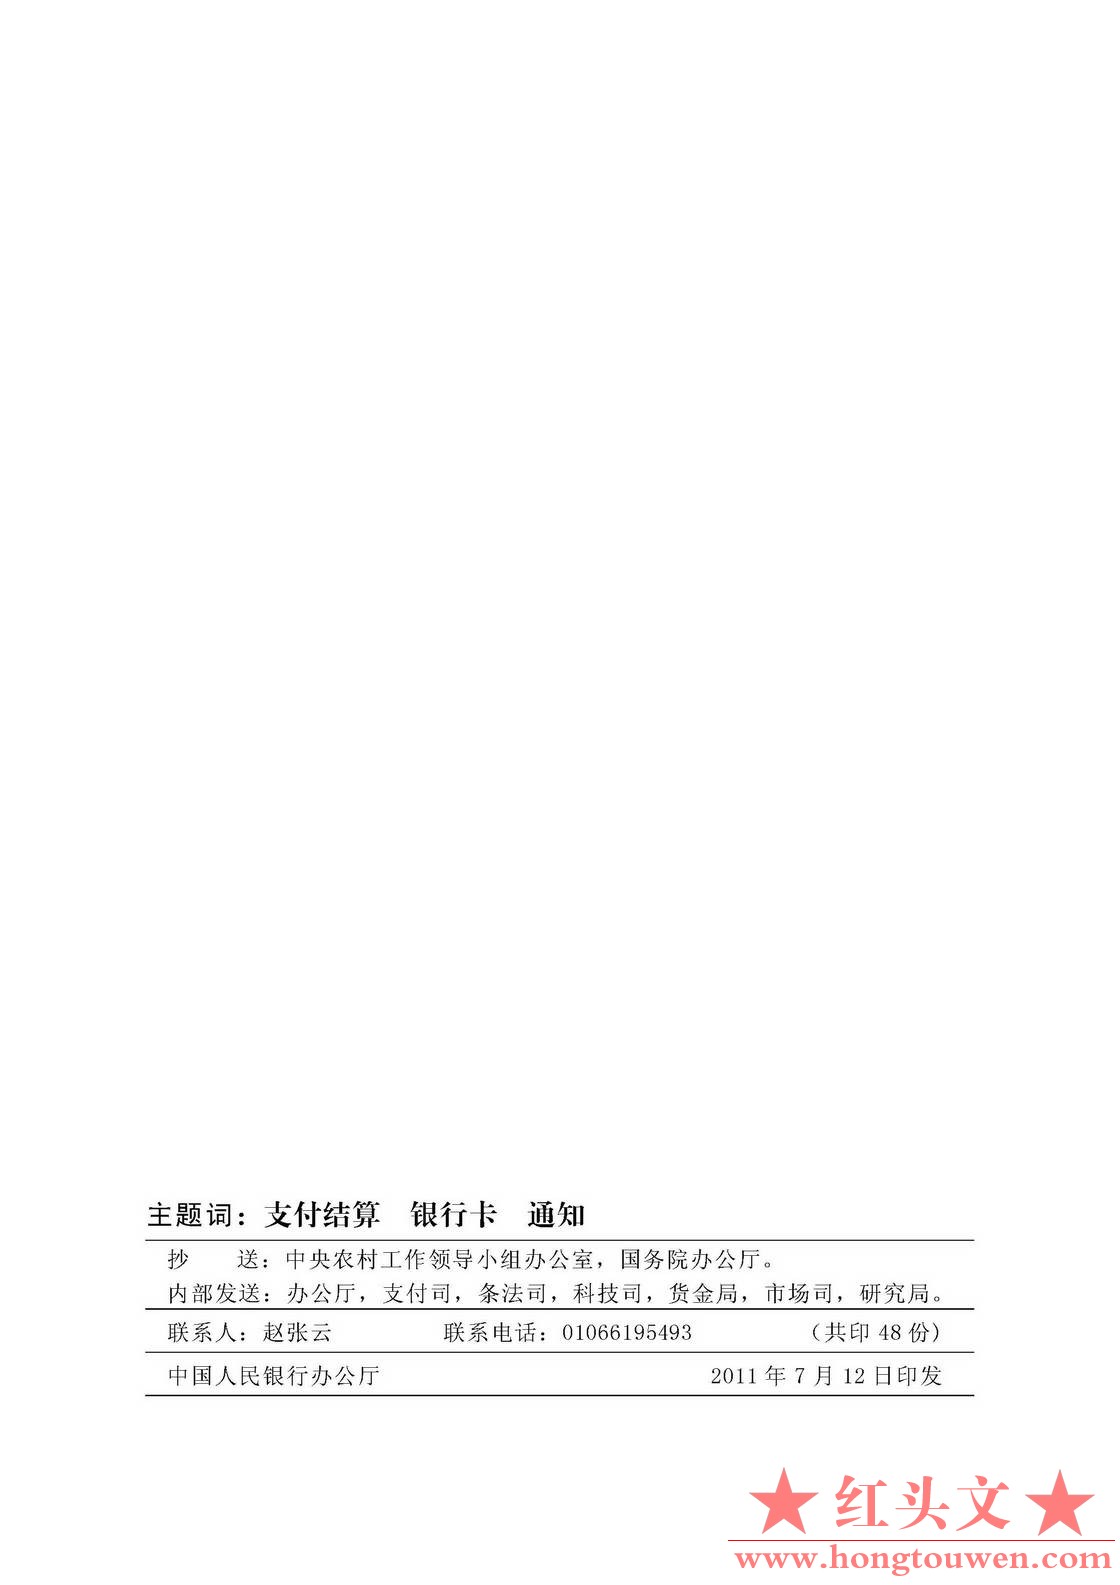 银发[2011]177号-中国人民银行关于推广银行卡助农取款服务的通知_页面_08.jpg.jpg